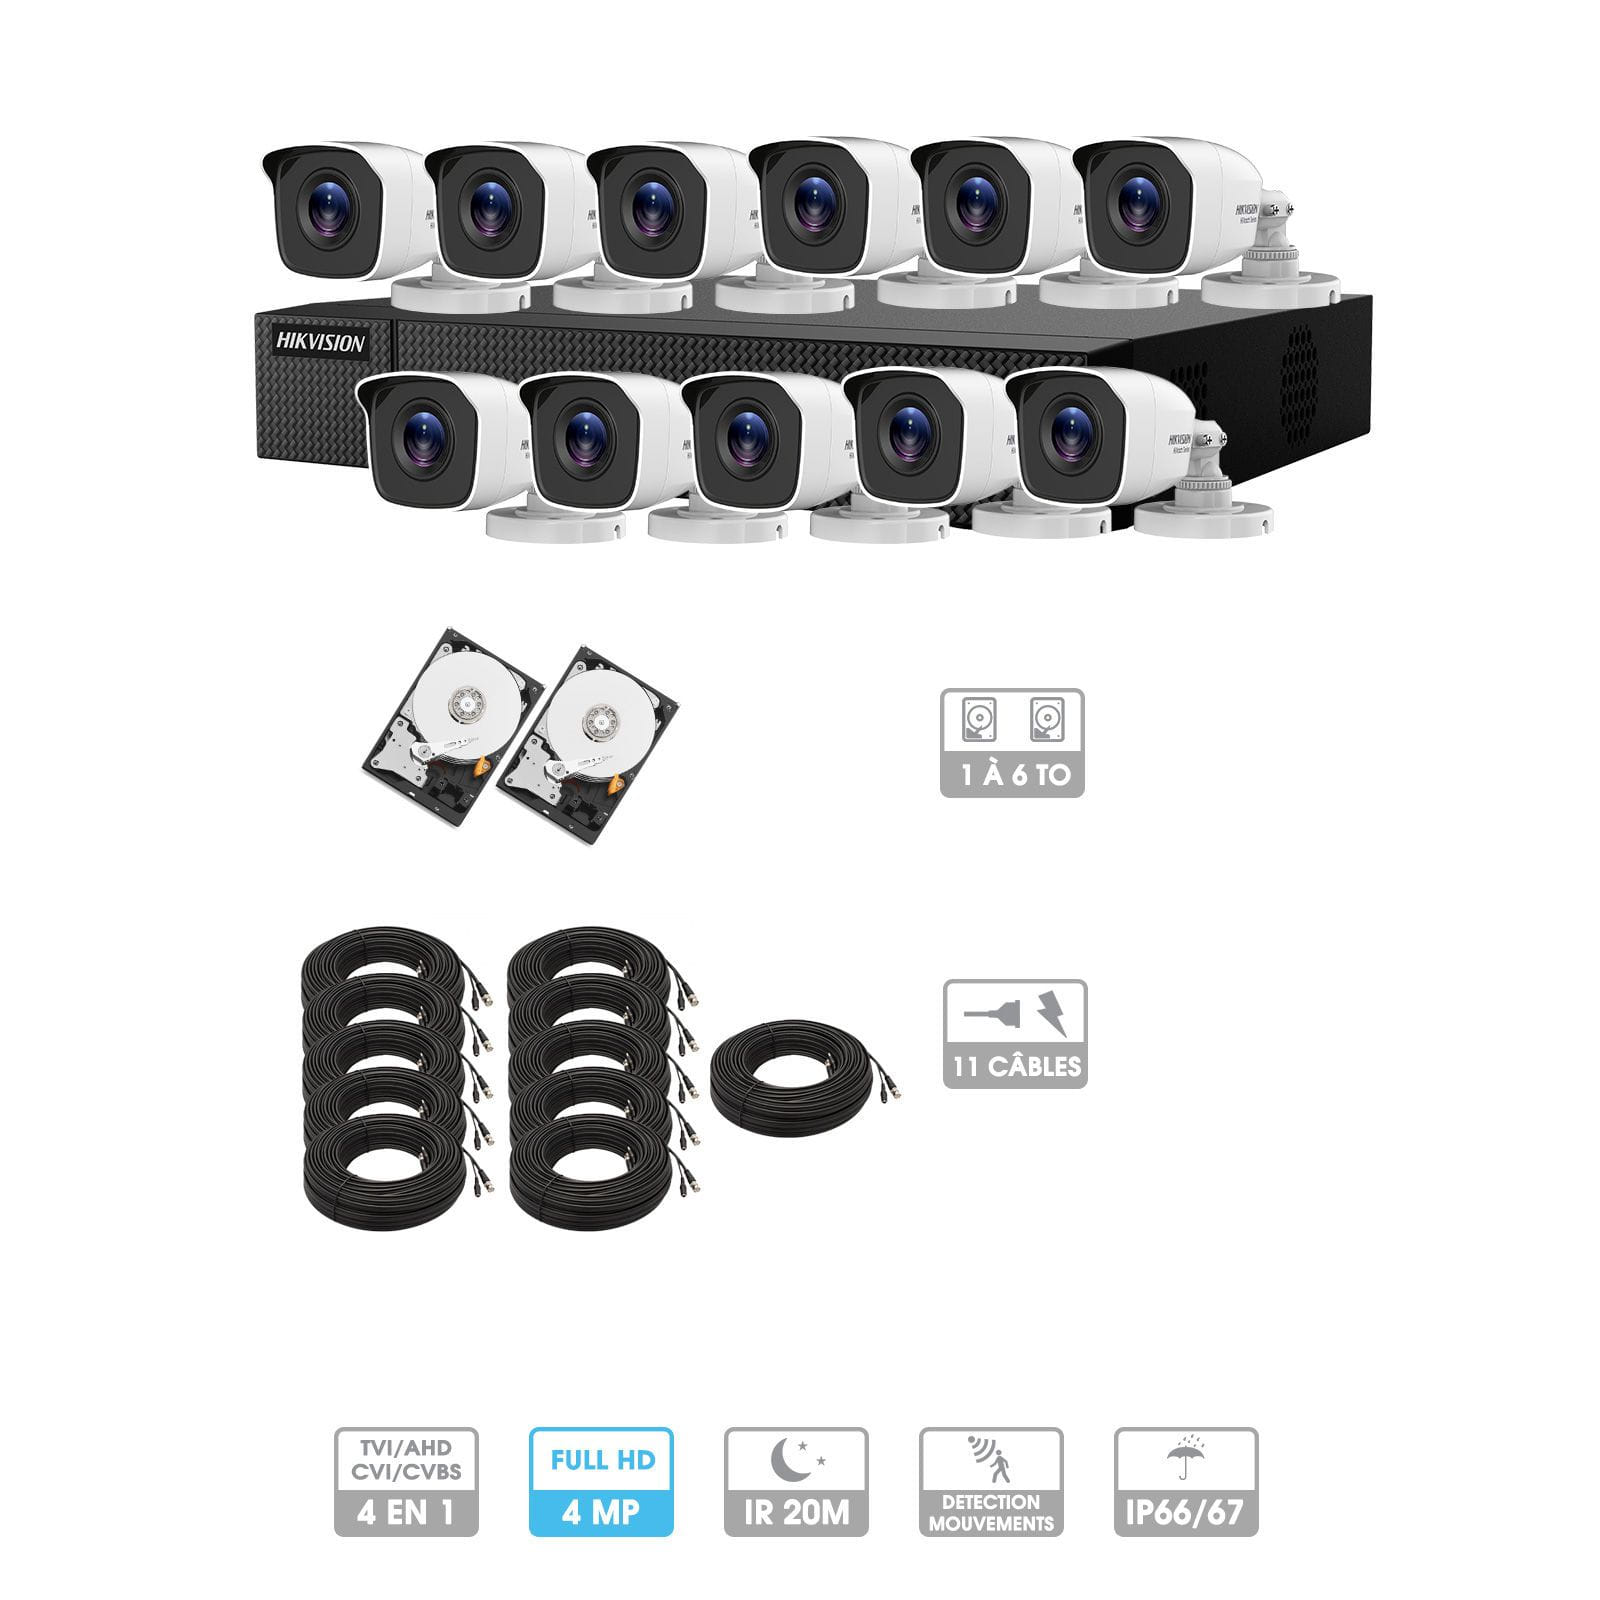 Kit vidéosurveillance 10 caméras | 4MP HD | 10 câbles 20 mètres | 2 HDD 1à 6 To | Tube Hiwatch